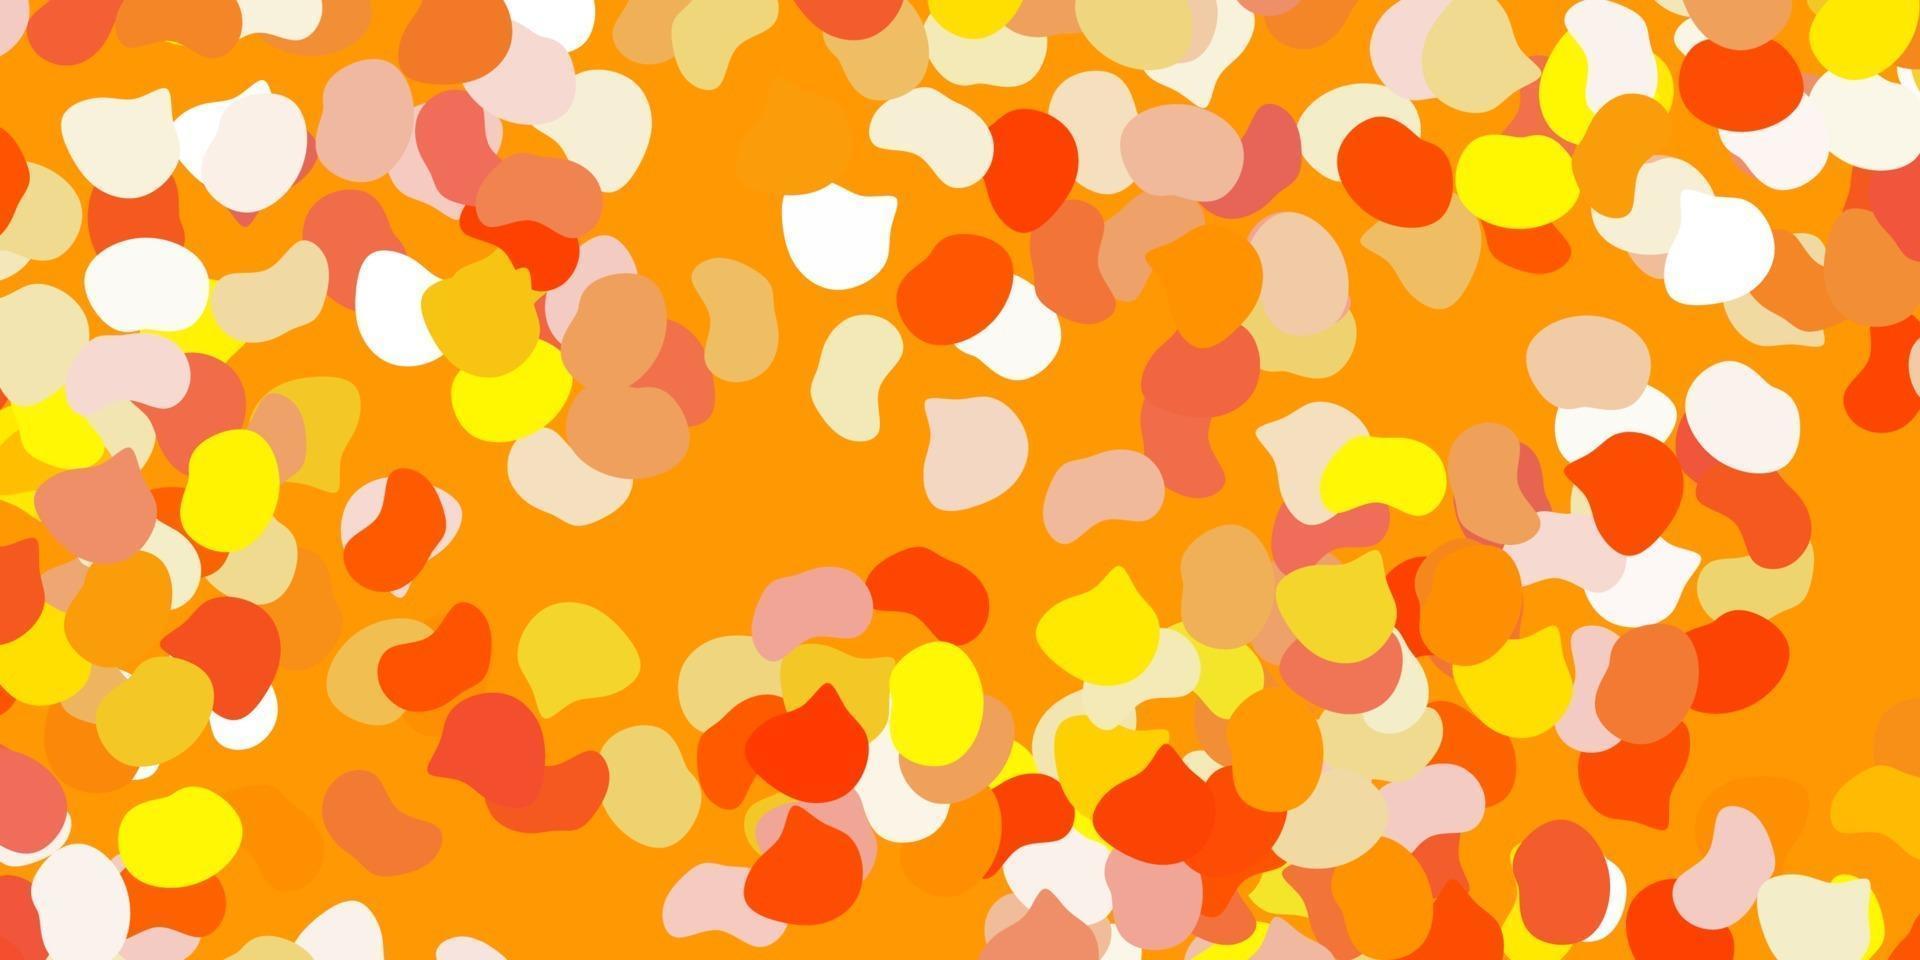 sfondo vettoriale arancione chiaro con forme caotiche.